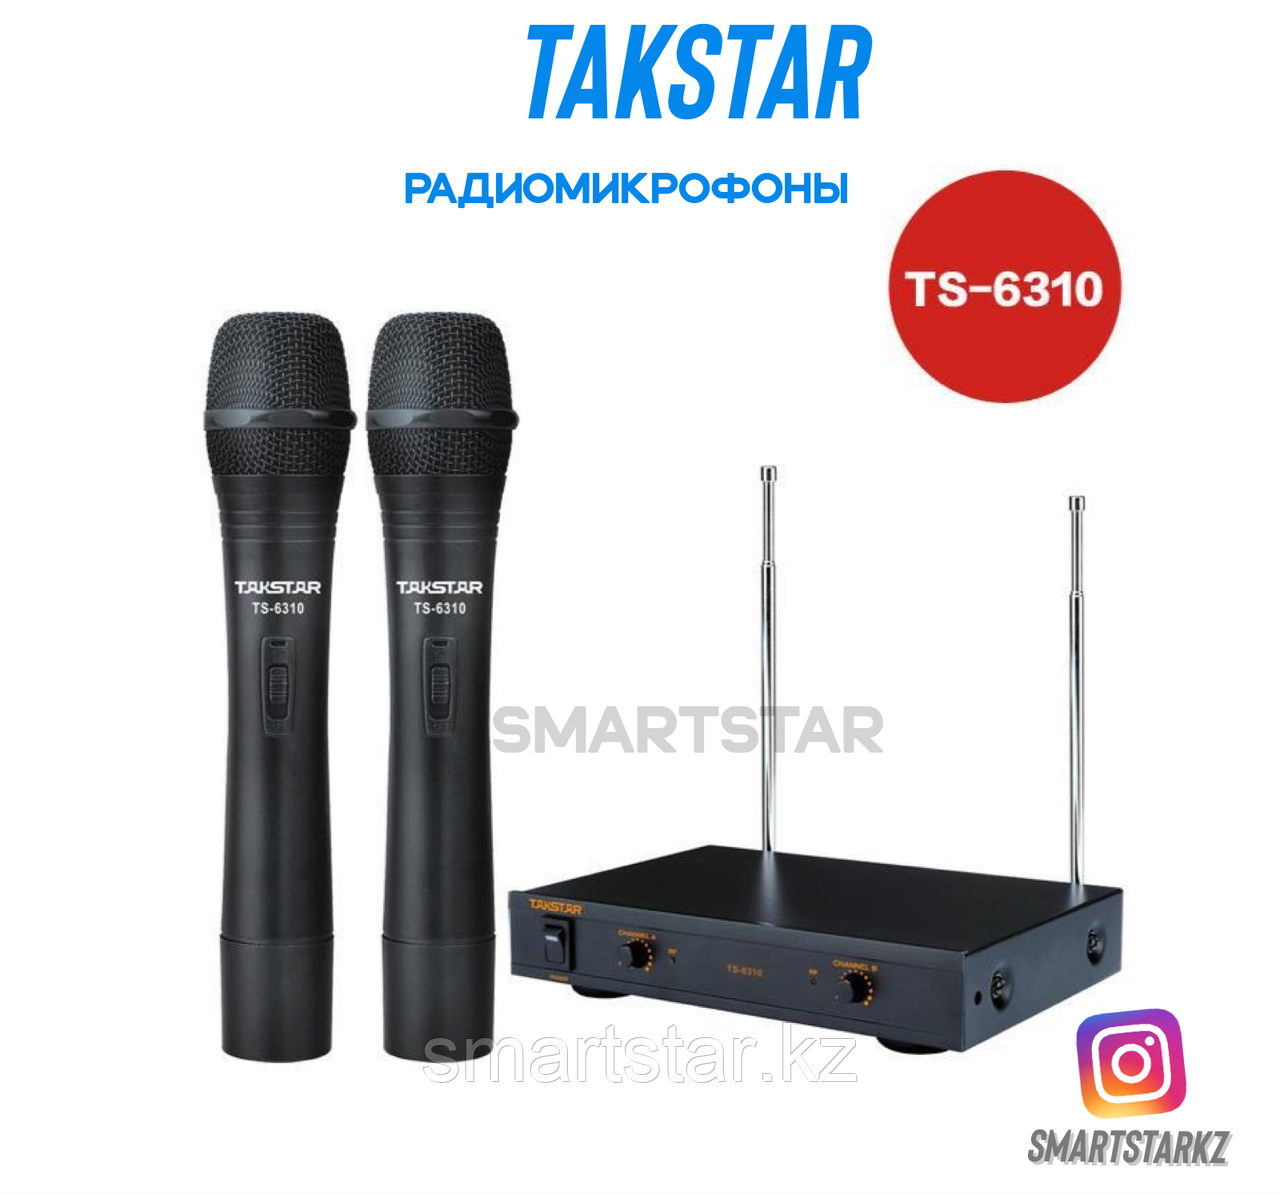 Радиомикрофоны Takstar TS-6310